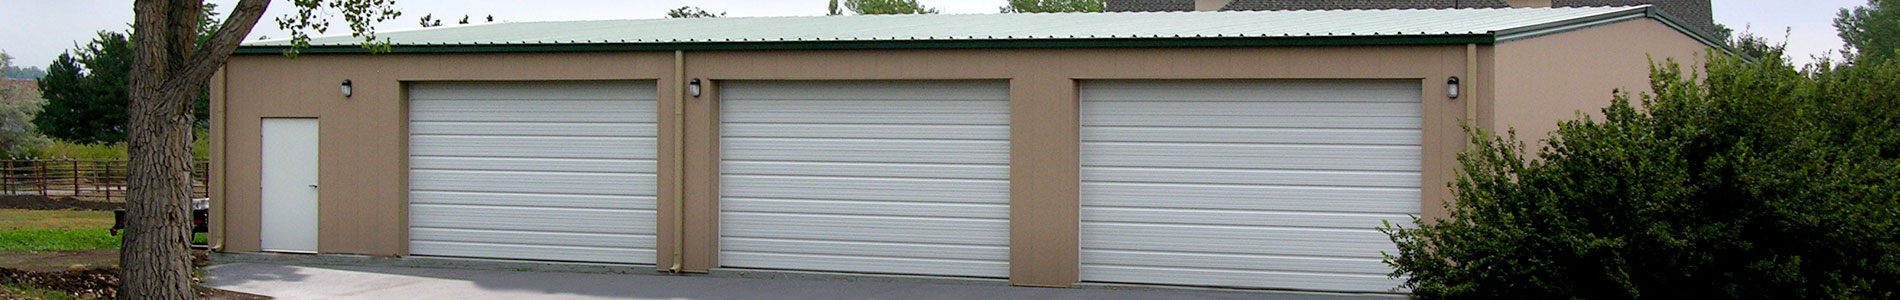 Garage Building Kit